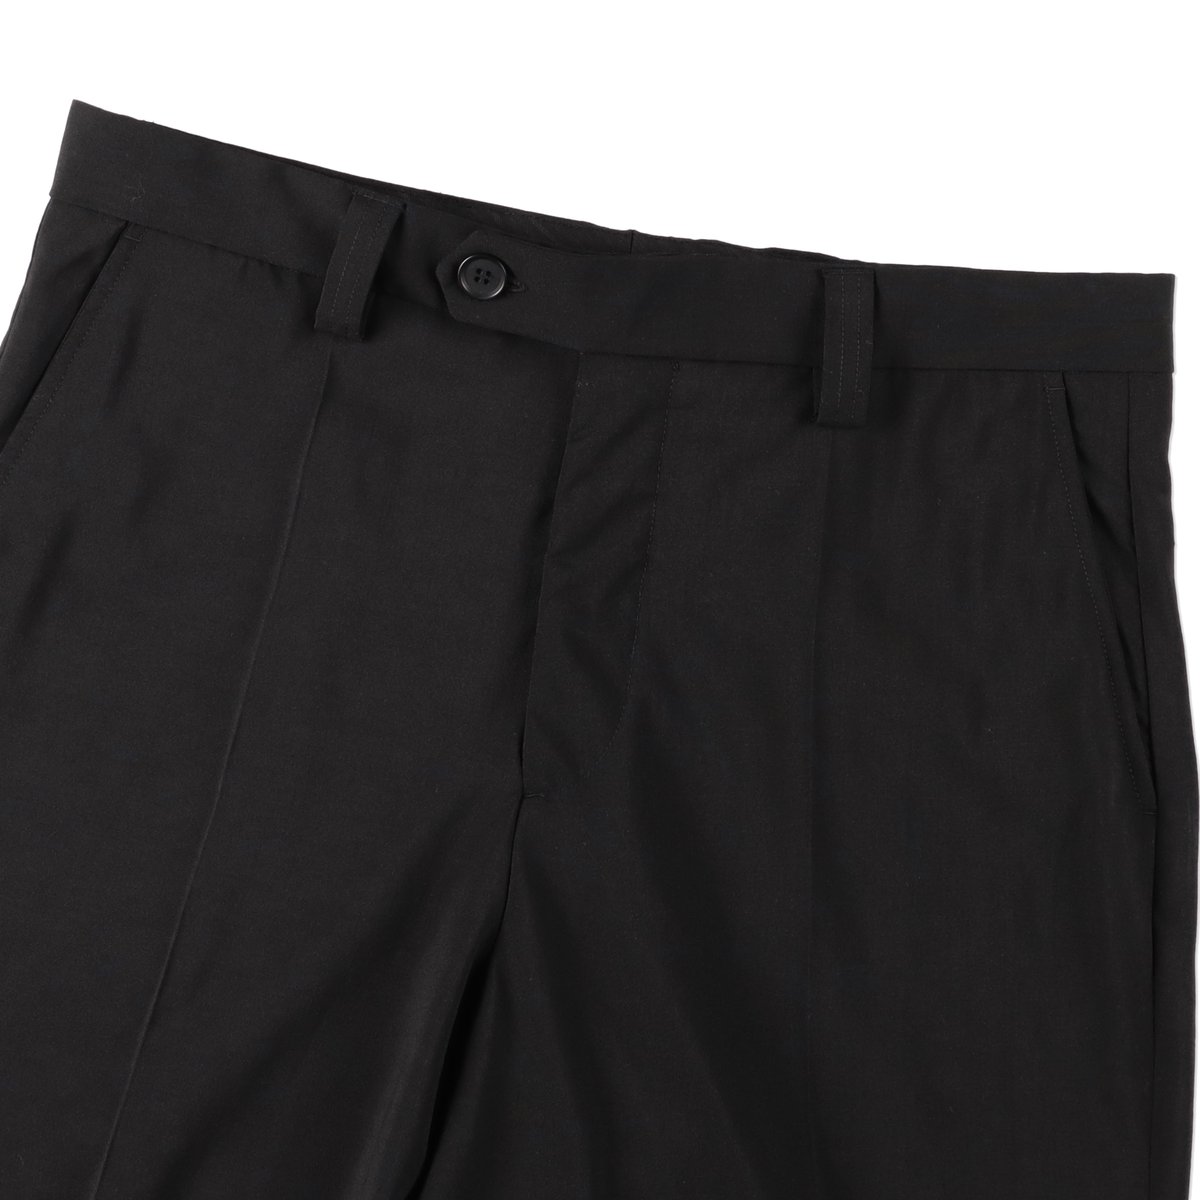 mfpen Studio Trousers Black Wool【M323-41-003】(N...